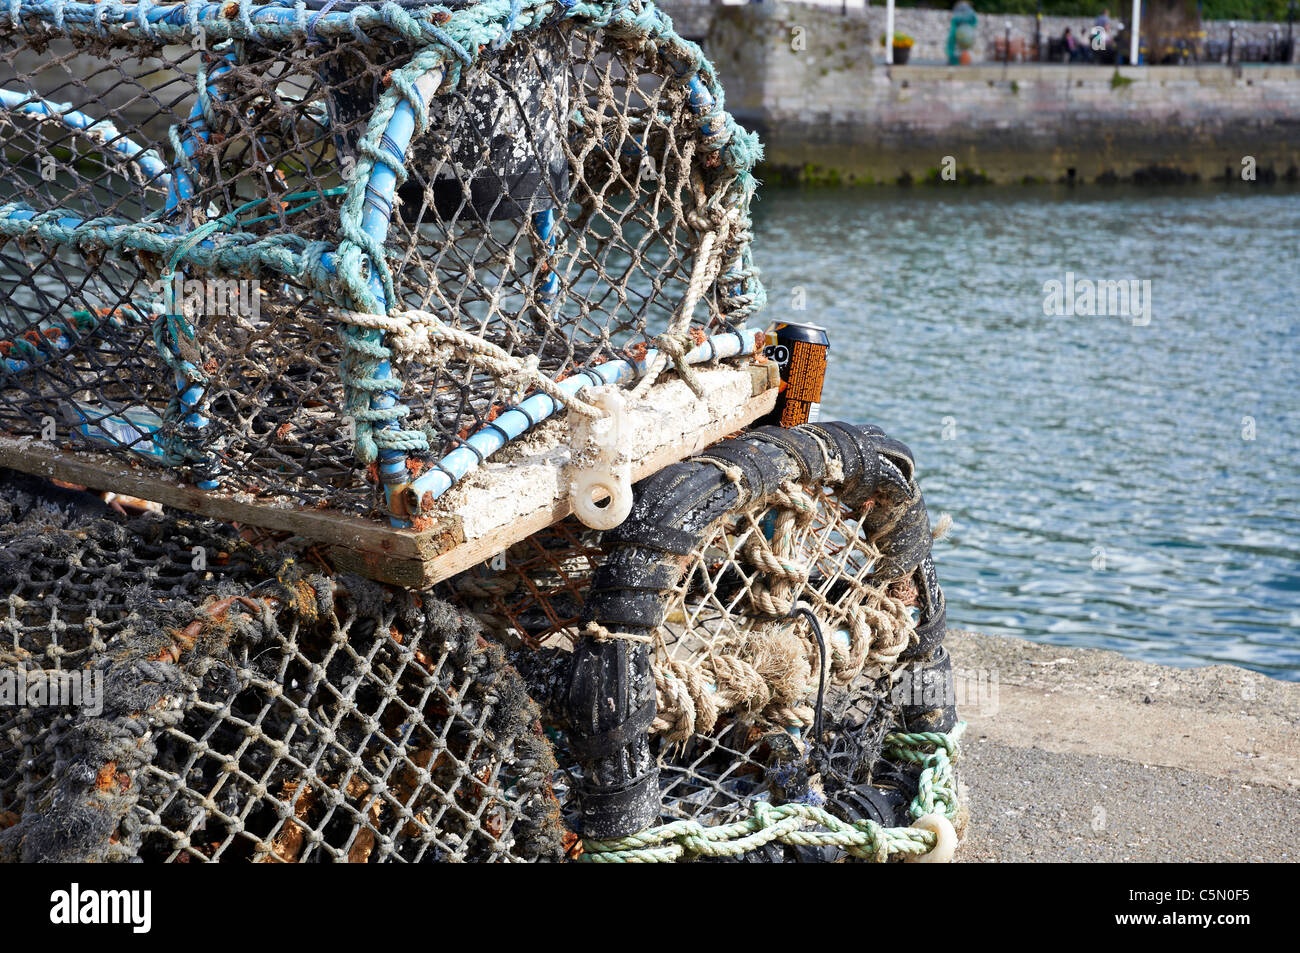 Des casiers à crabe et homard empilés sur le quai au port de Brixham Devon, Angleterre. Banque D'Images